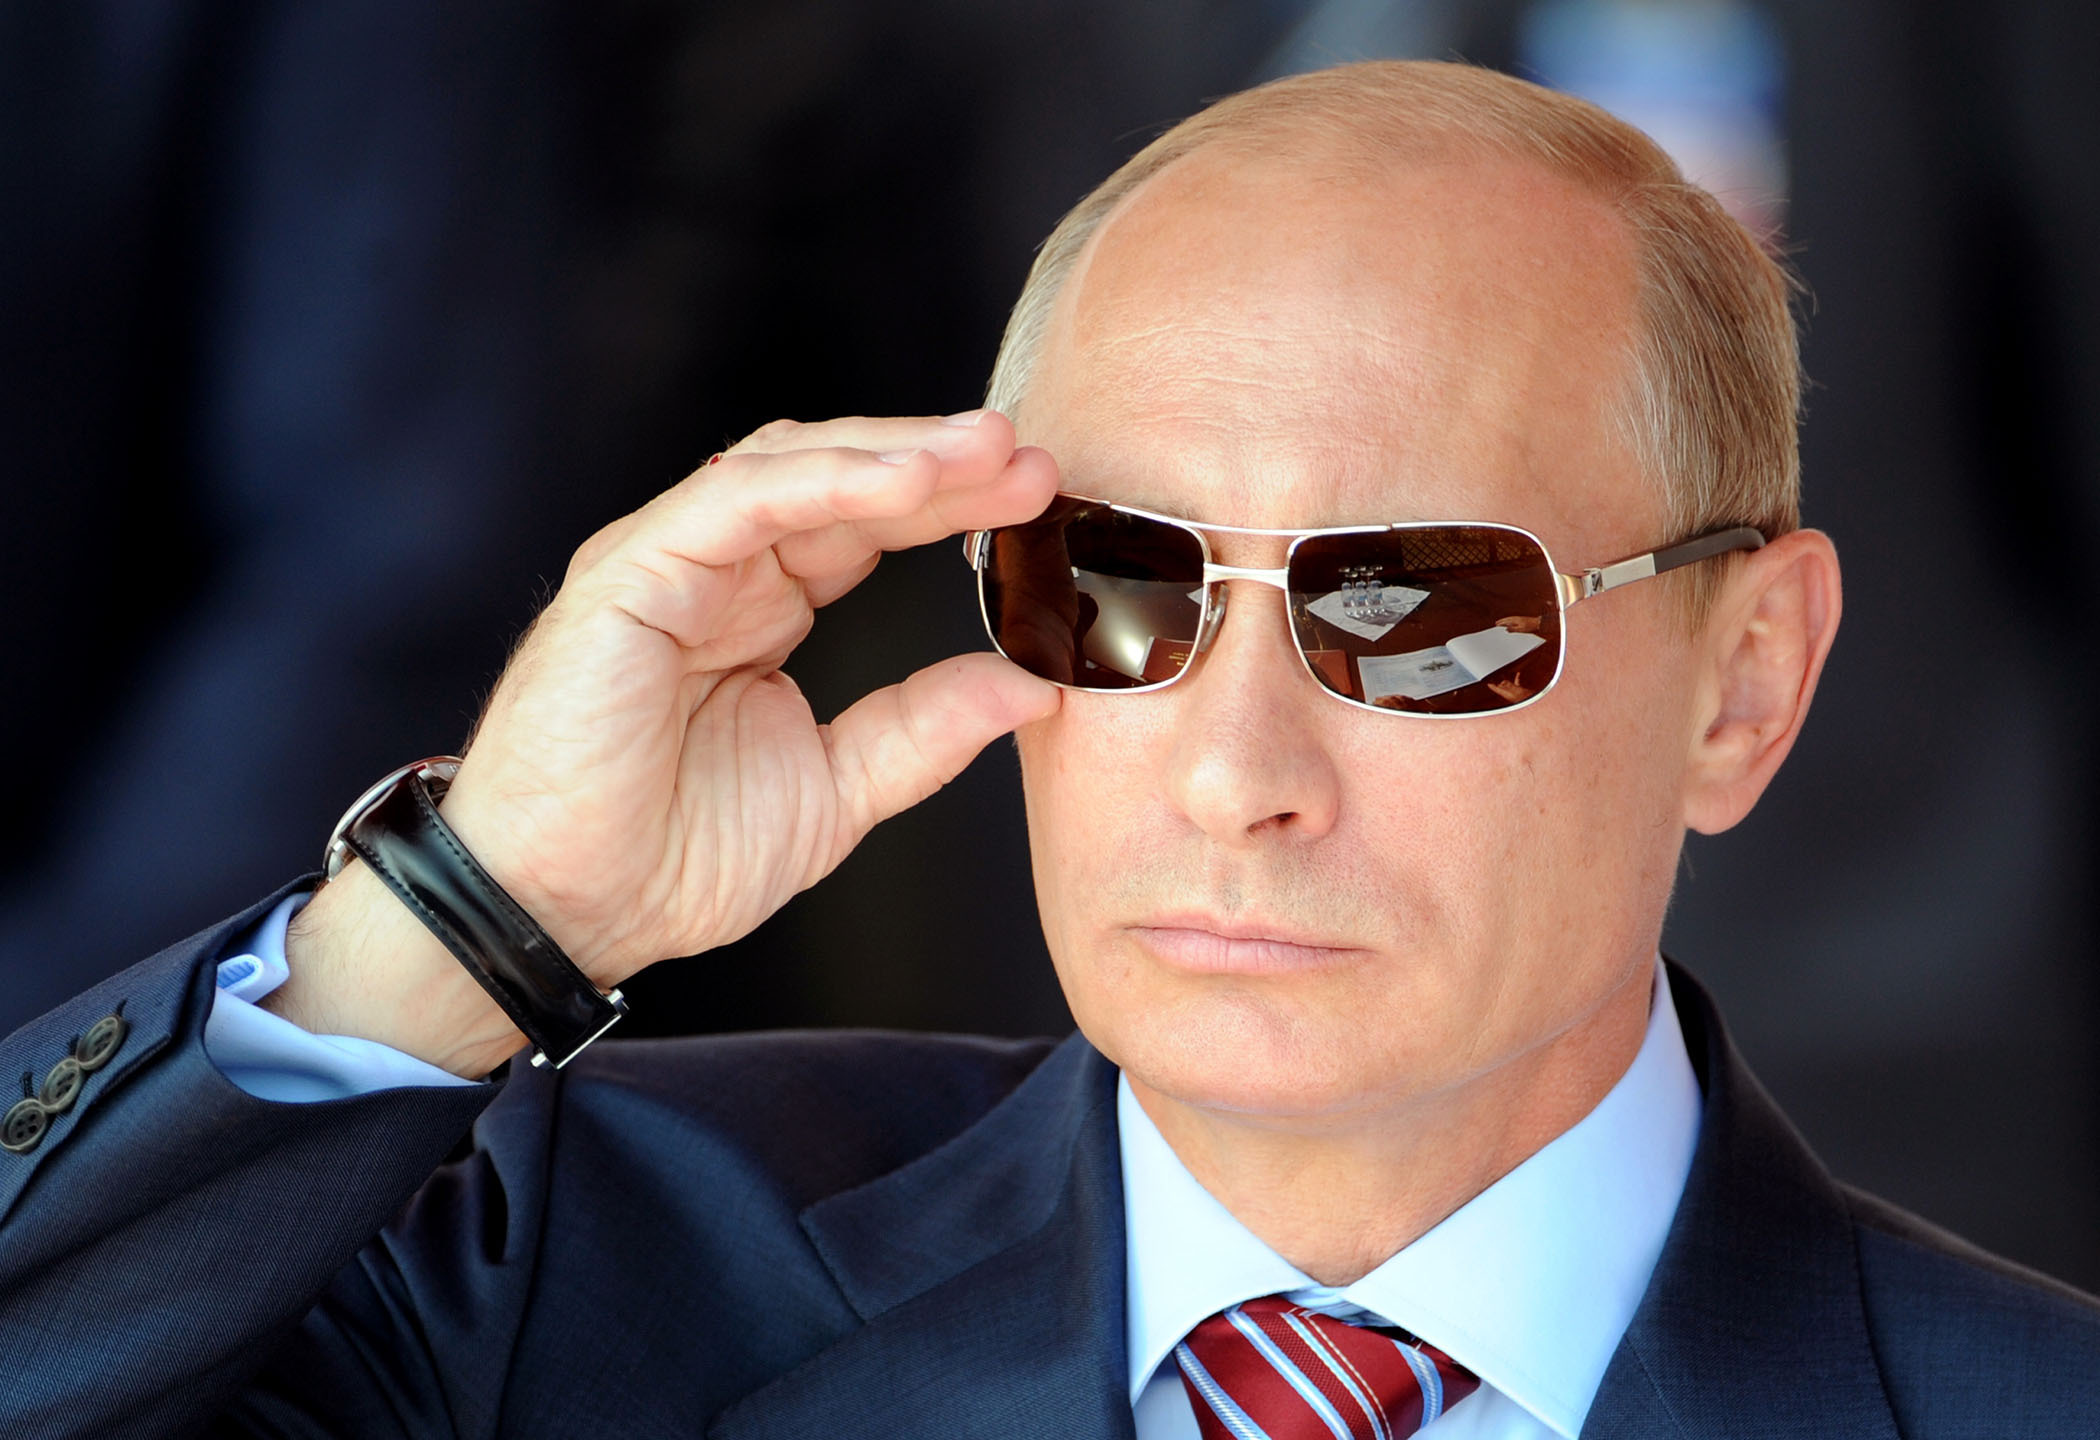 Peste 70% dintre ruşi intenţionează să voteze cu Vladimir Putin în scrutinul prezidenţial 